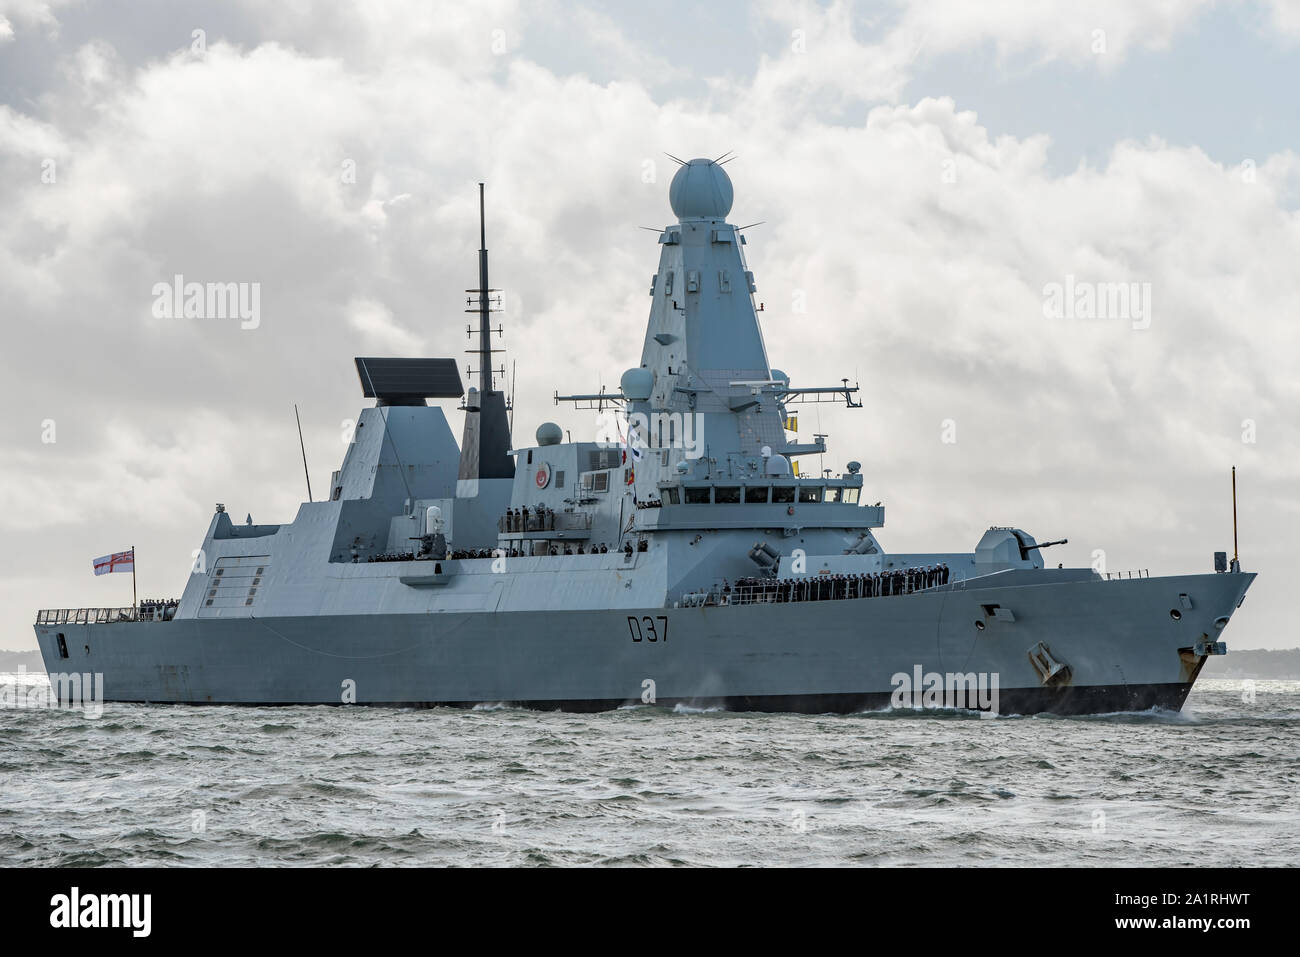 La Royal Navy navire de guerre HMS Duncan (D37) retour du front à Portsmouth, Royaume-uni le 28/9/19 après un long déploiement au Moyen-Orient et Golfe Persique. Banque D'Images